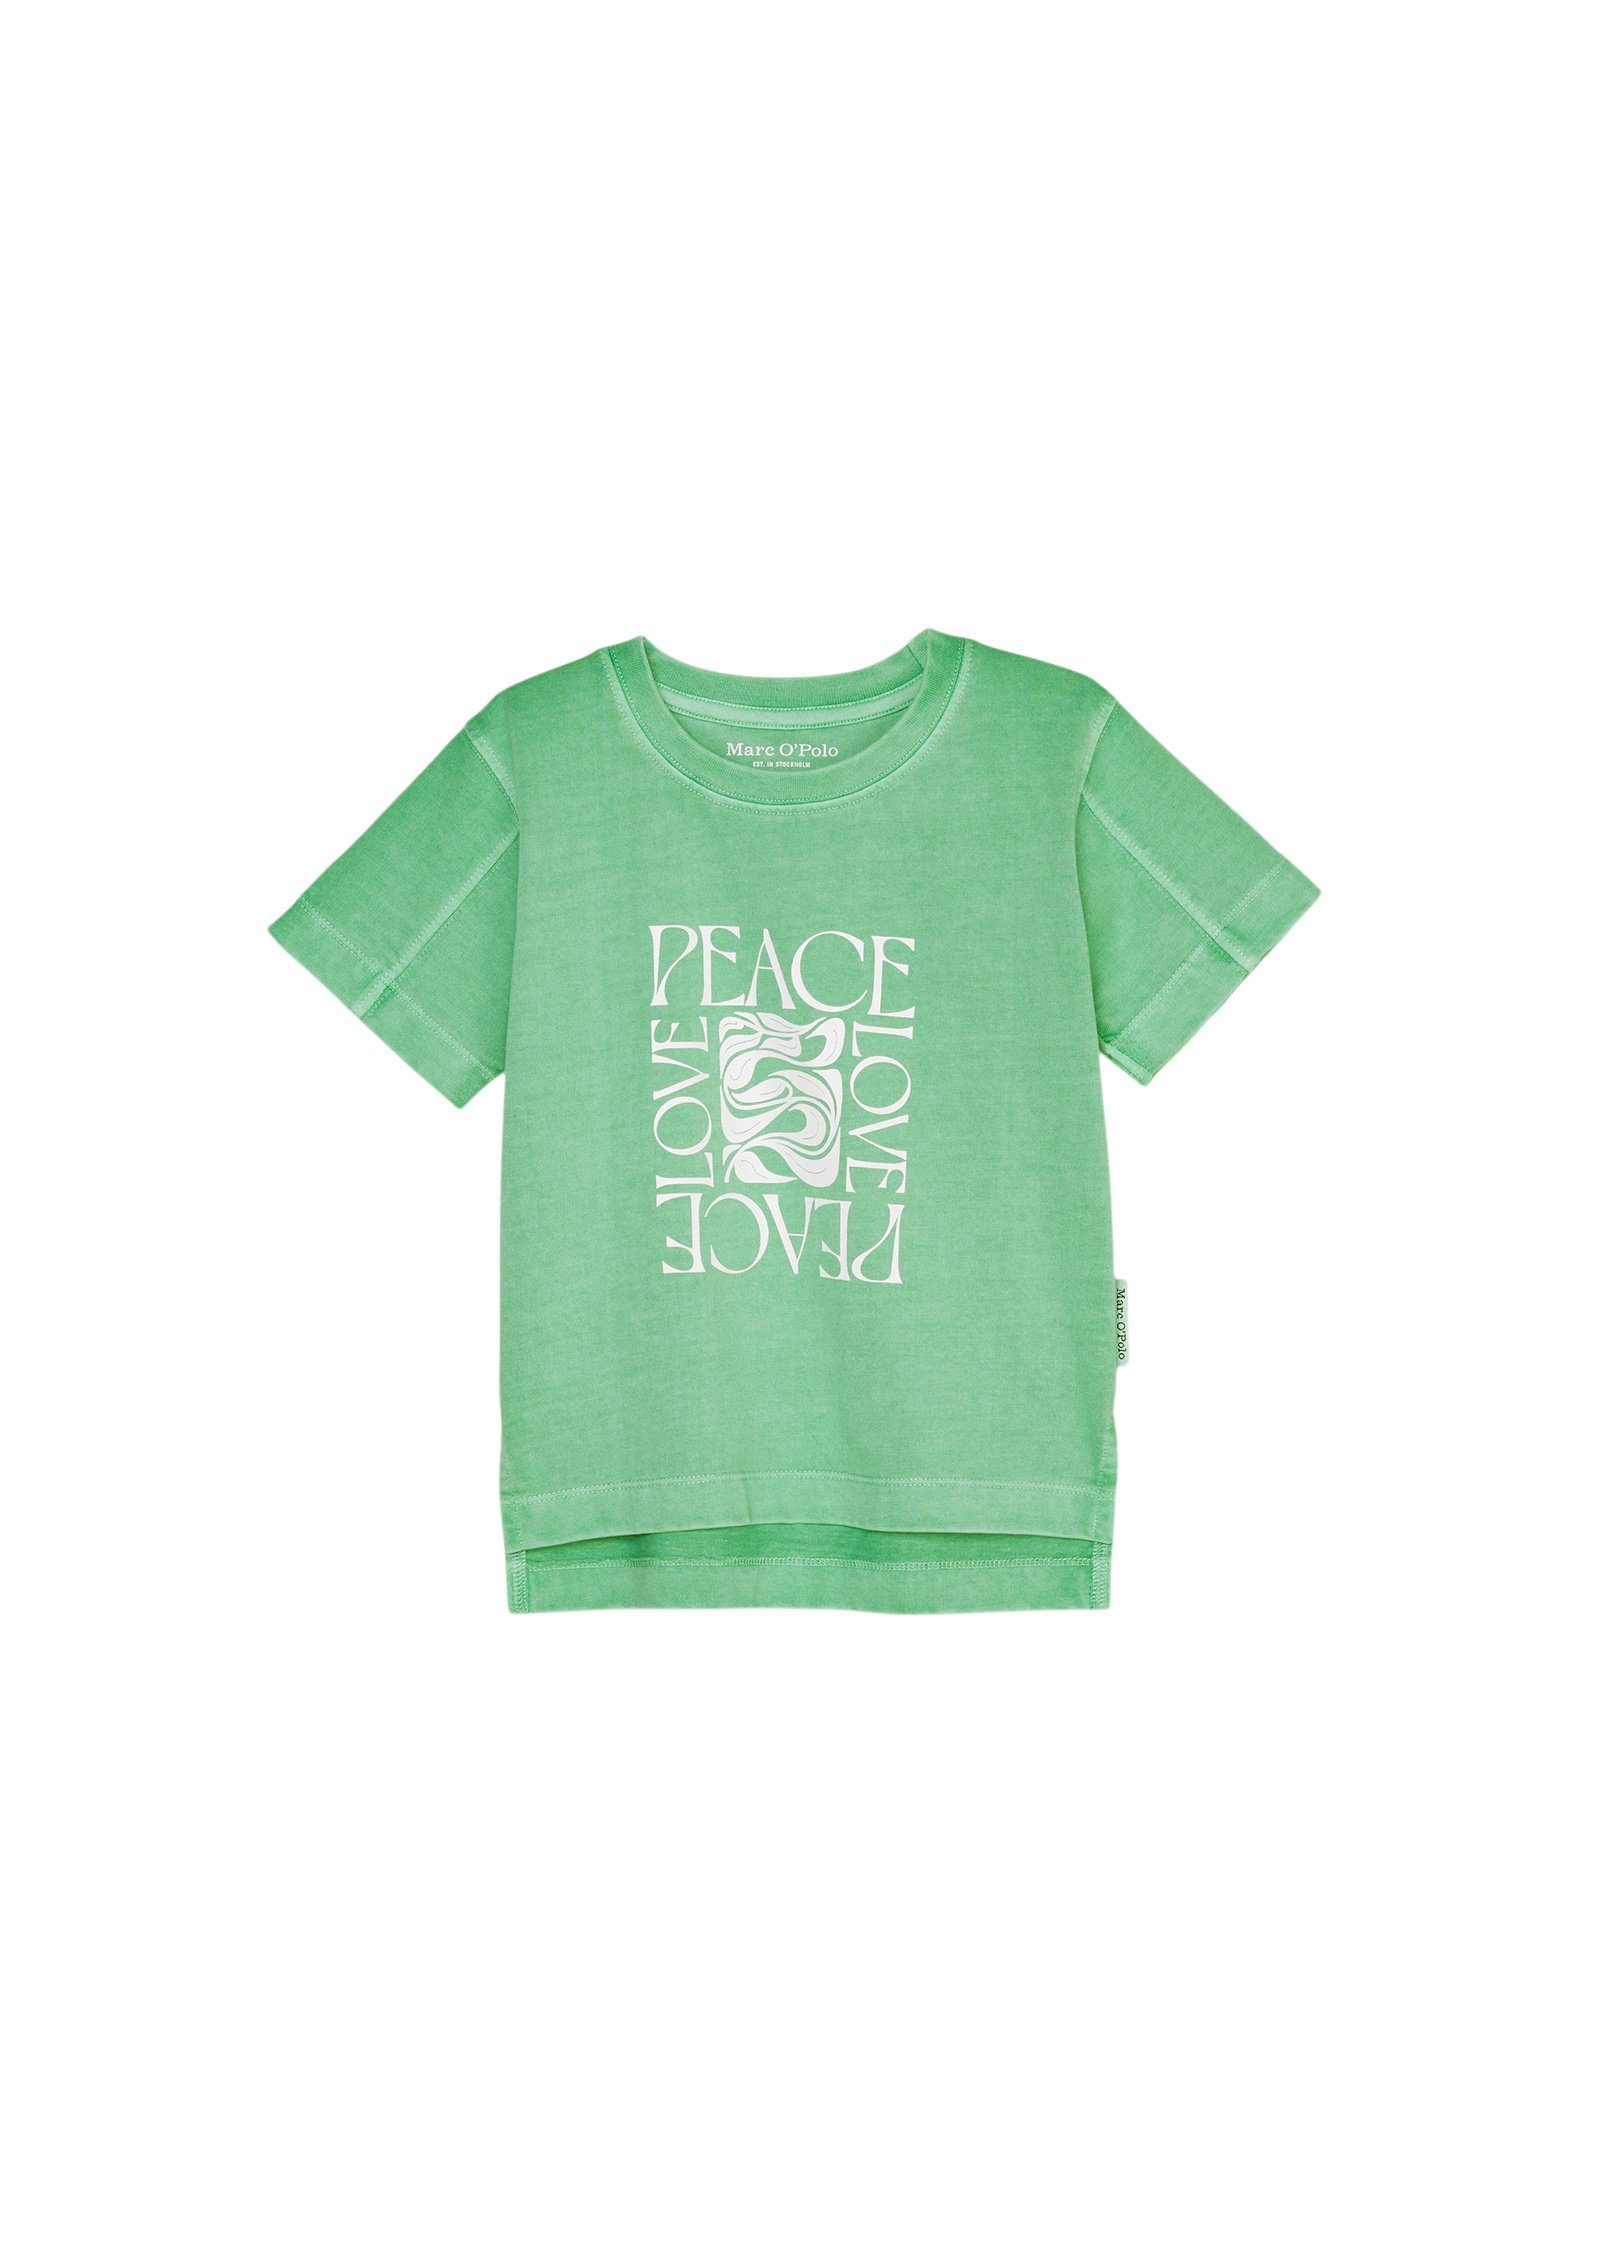 O'Polo T-Shirt grün Bio-Baumwolle reiner Marc aus